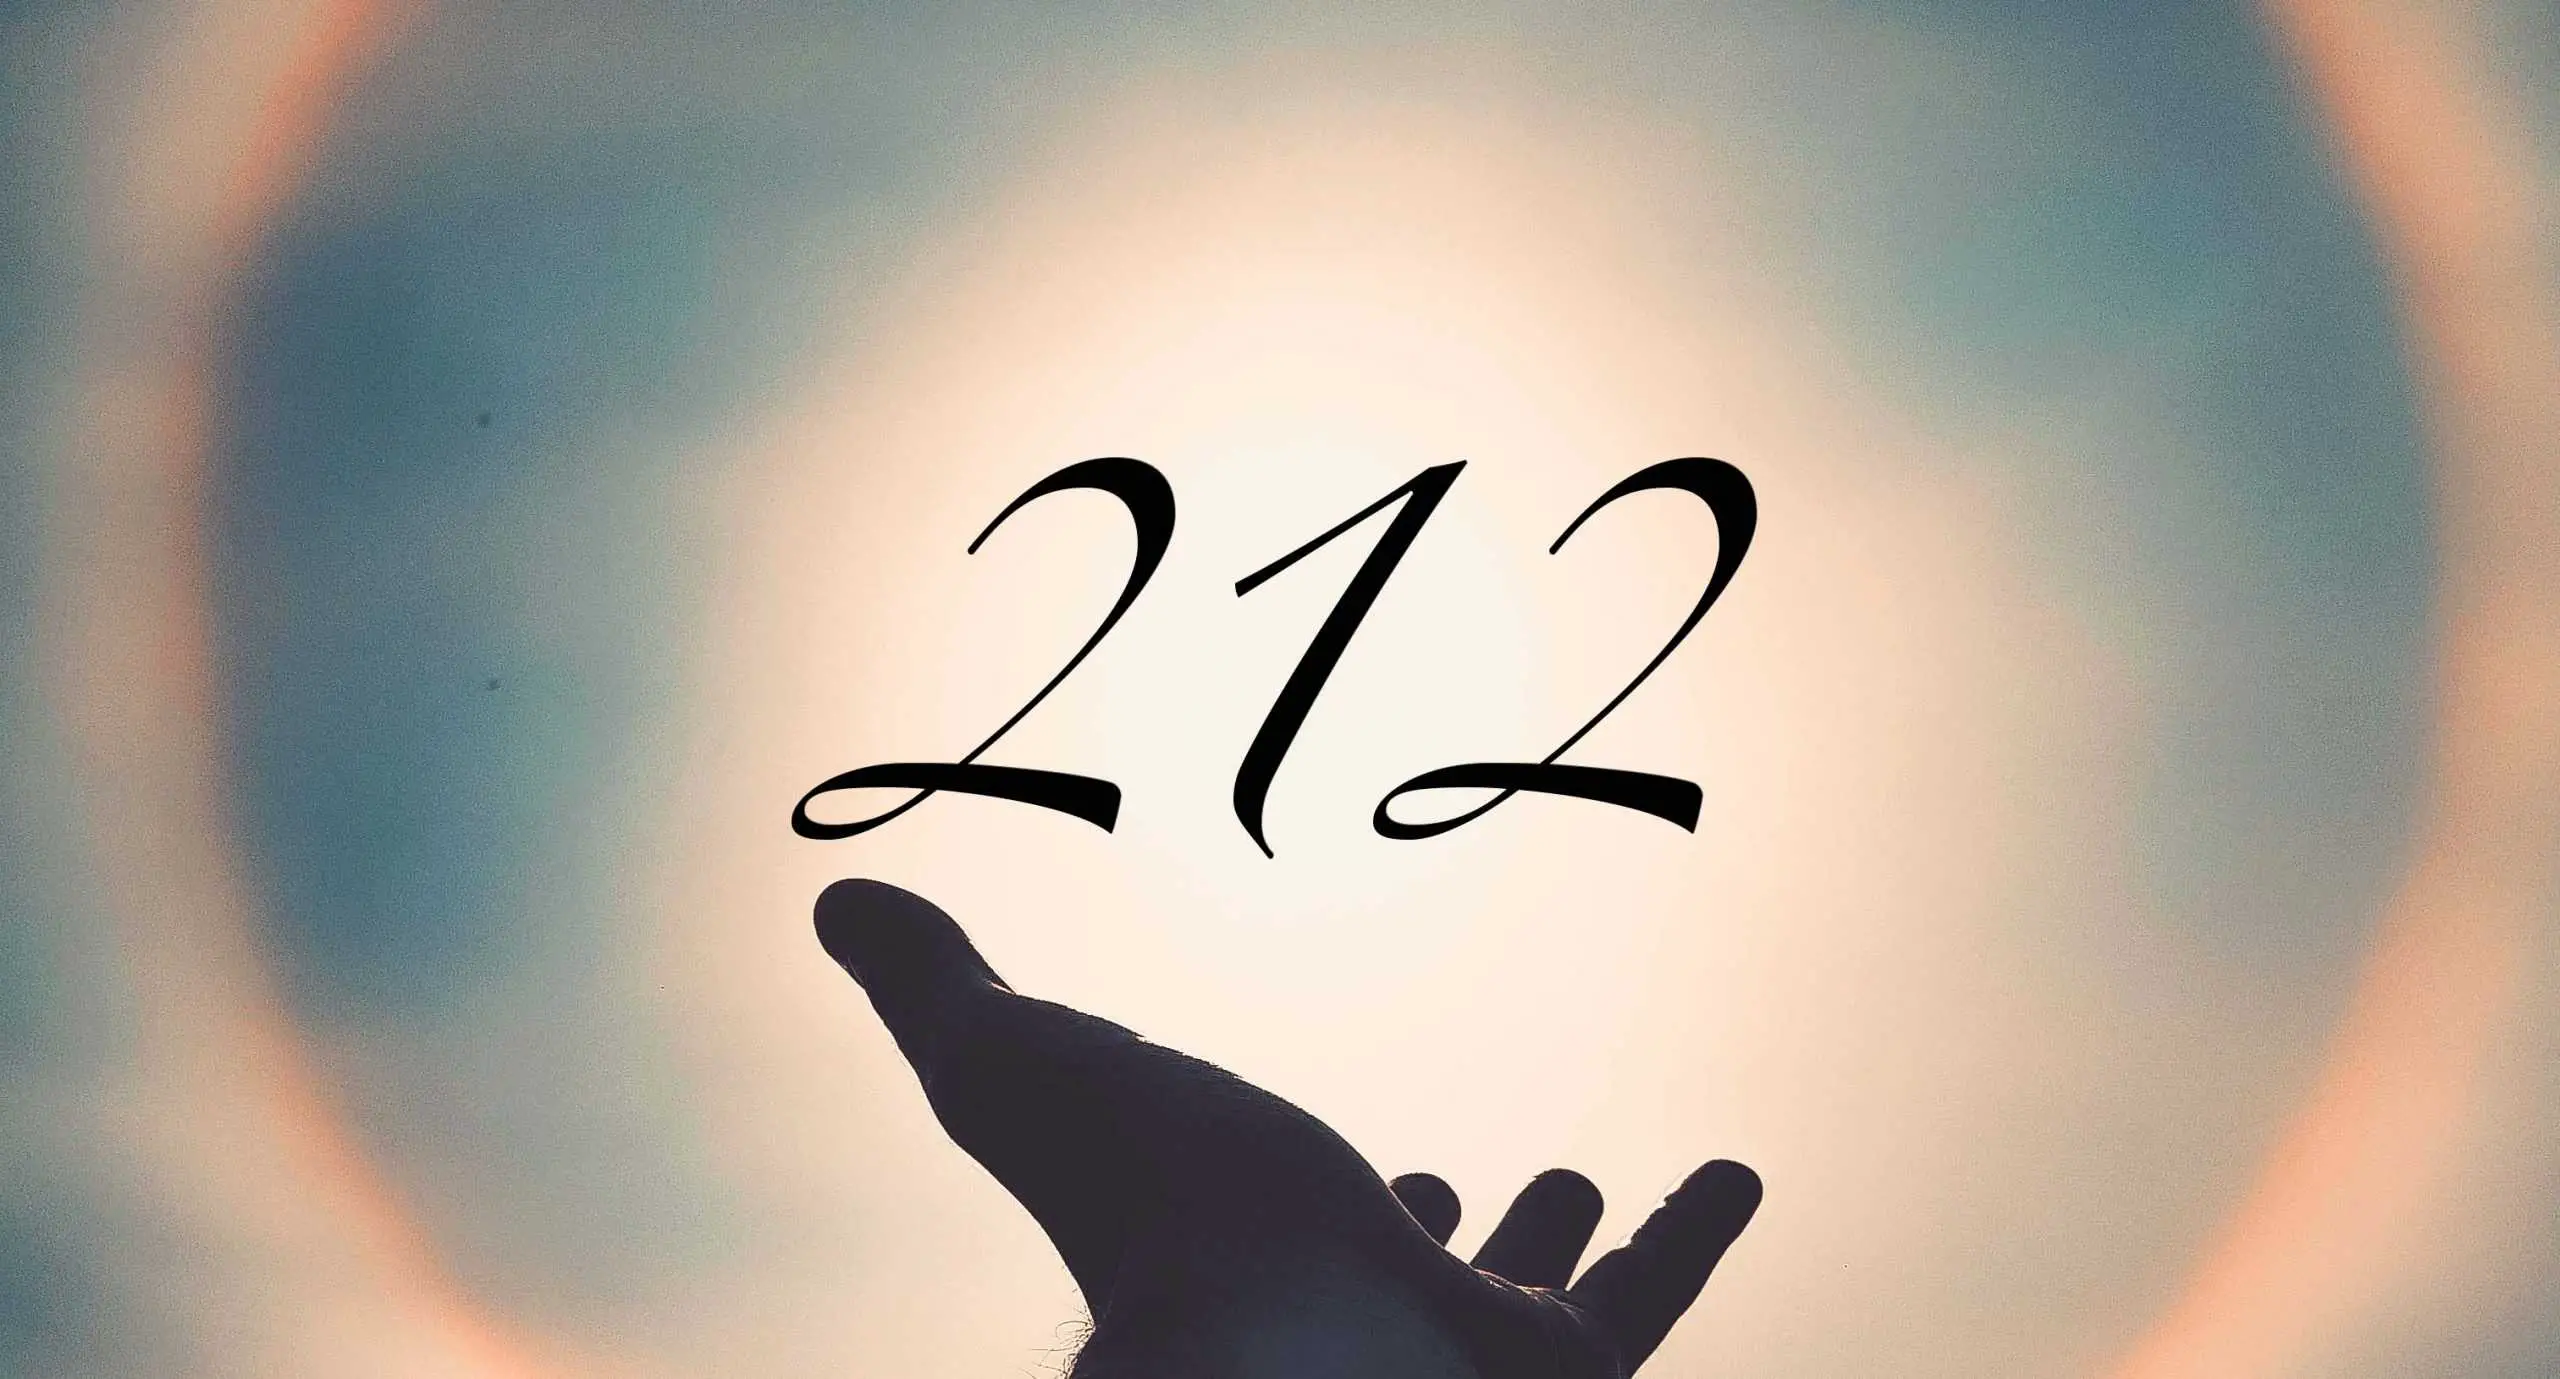 Signification du nombre 212